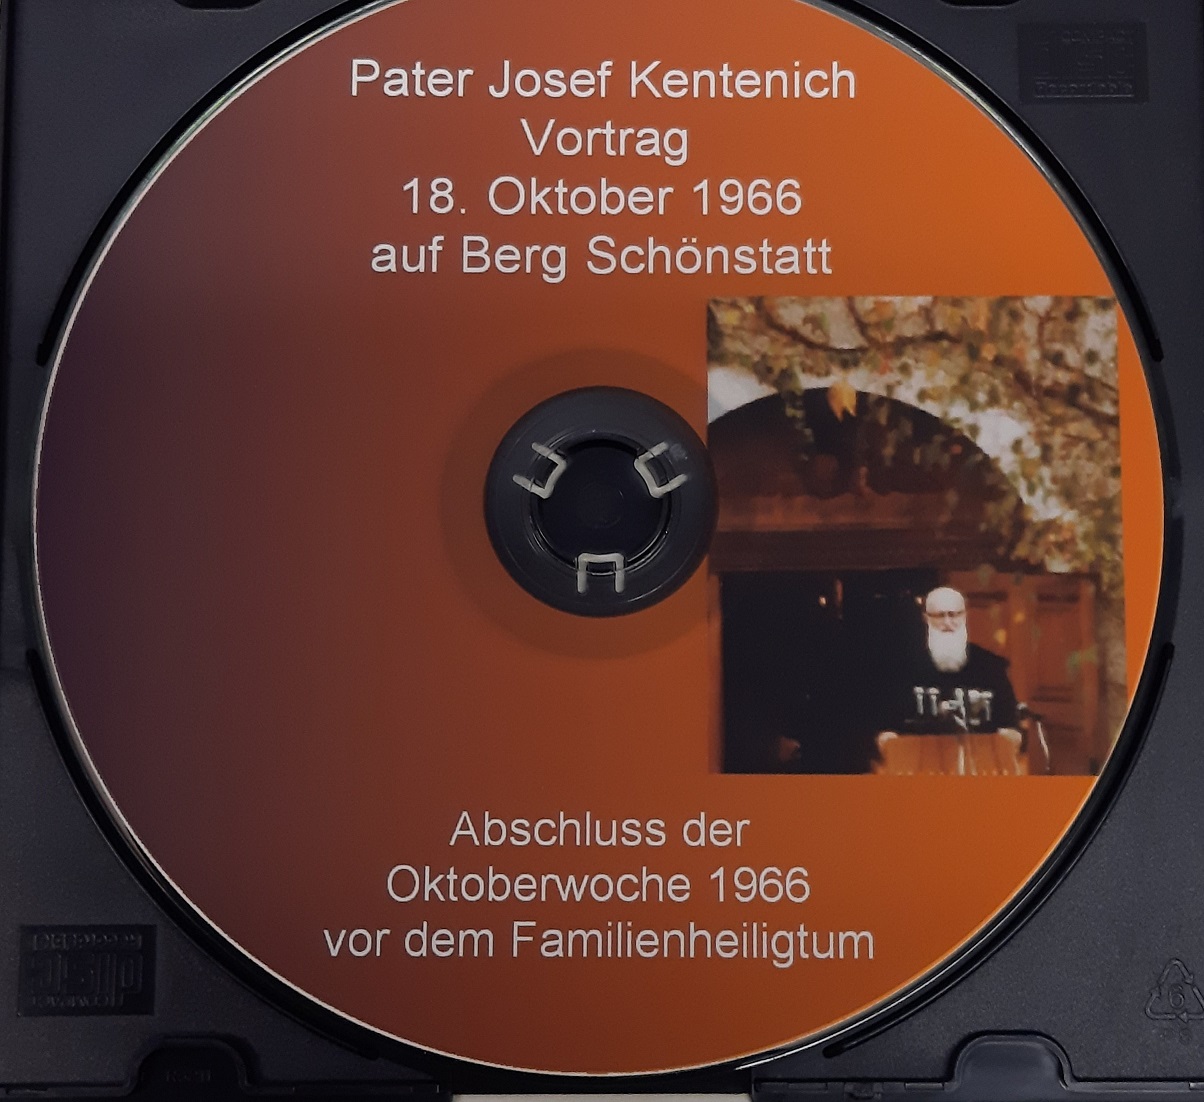 Abschluss der Oktoberwoche 1966 vor dem Familienheiligtum auf Berg Schönstatt,   Audio-CD